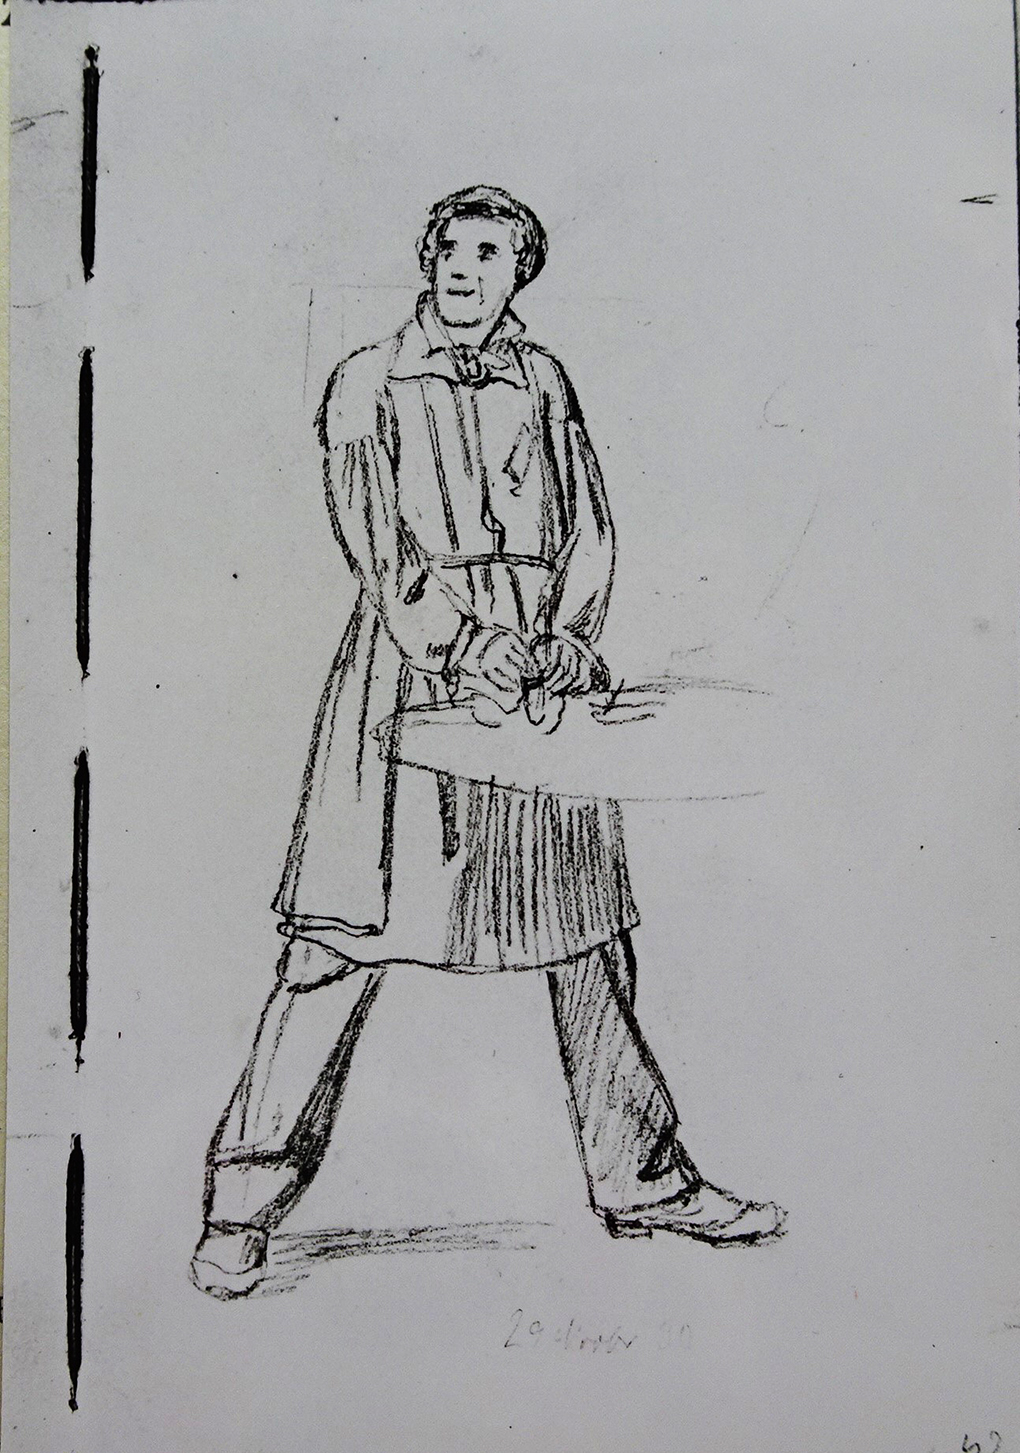 Ludwig Most, Studium studenta, 29 listopada 1830, ołówek, papier welinowy, rysunek w szkicowniku nr III, karta 42, Muzeum Narodowe w Szczecinie